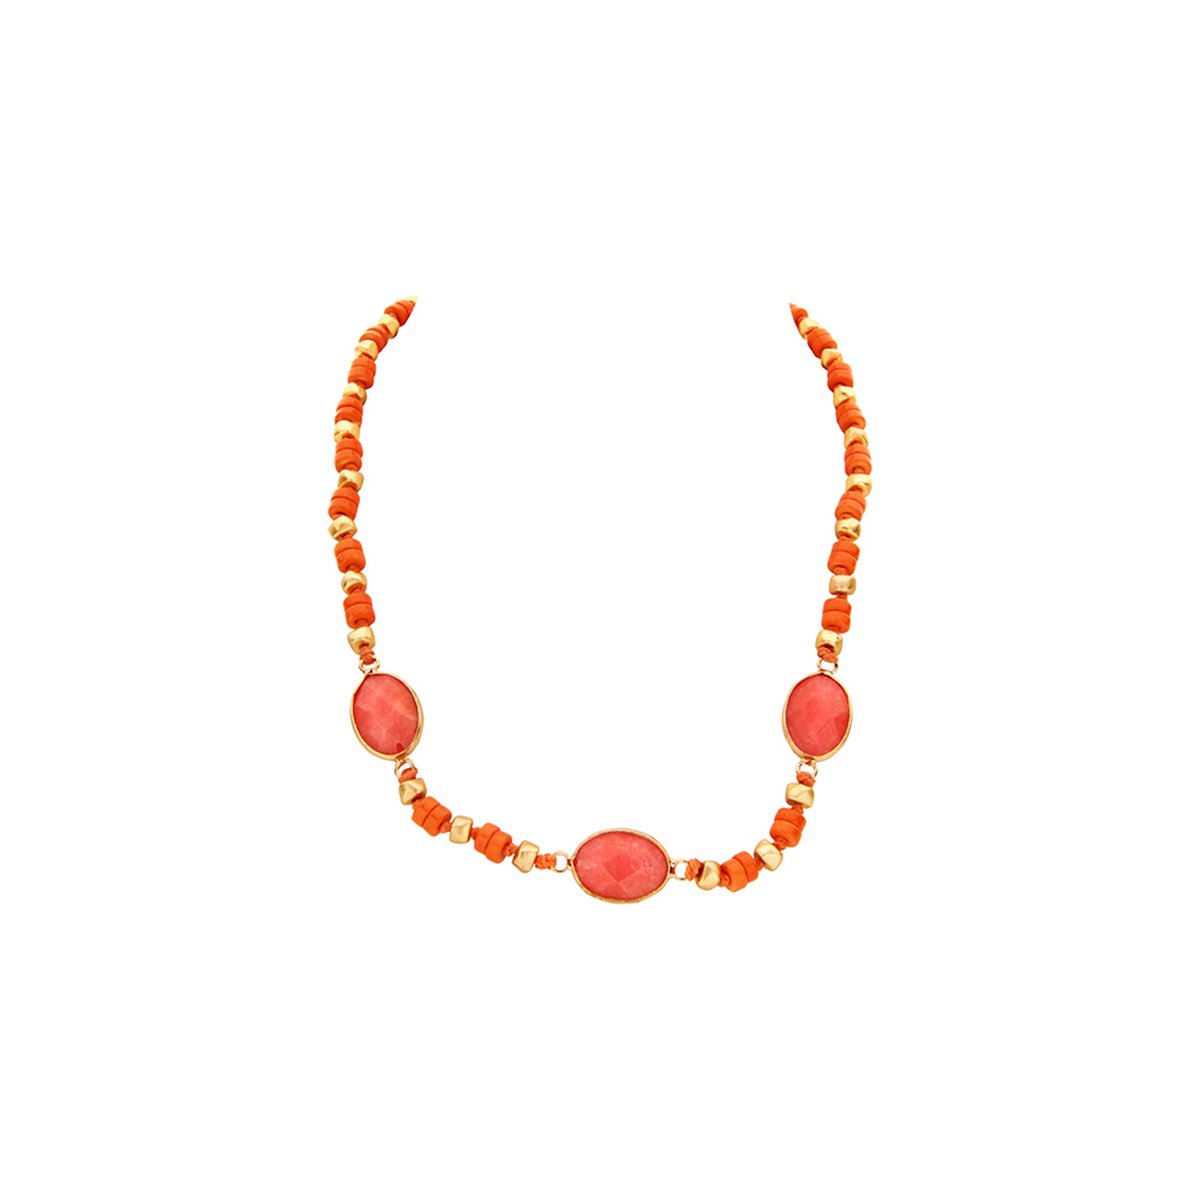 Les Cordes - Halsketting - Collier - PAN53 - Kleur Oranje - Metaal - Sieraad Dames - Juwelen - Statement ketting